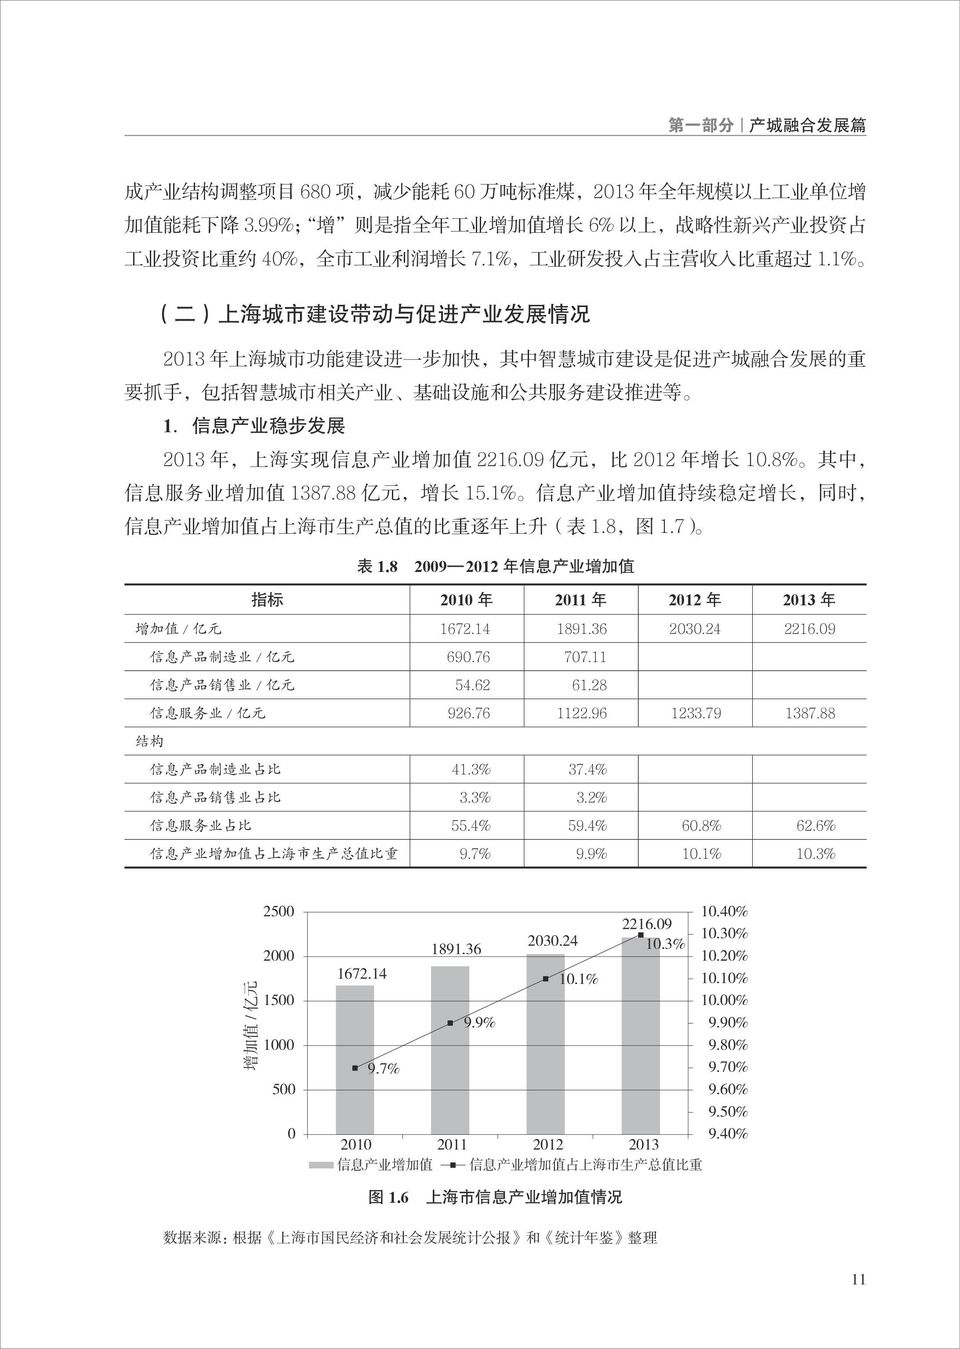 1% ( 二 ) 上 海 城 市 建 设 带 动 与 促 进 产 业 发 展 情 况 2013 年 上 海 城 市 功 能 建 设 进 一 步 加 快, 其 中 智 慧 城 市 建 设 是 促 进 产 城 融 合 发 展 的 重 要 抓 手, 包 括 智 慧 城 市 相 关 产 业 基 础 设 施 和 公 共 服 务 建 设 推 进 等 1.